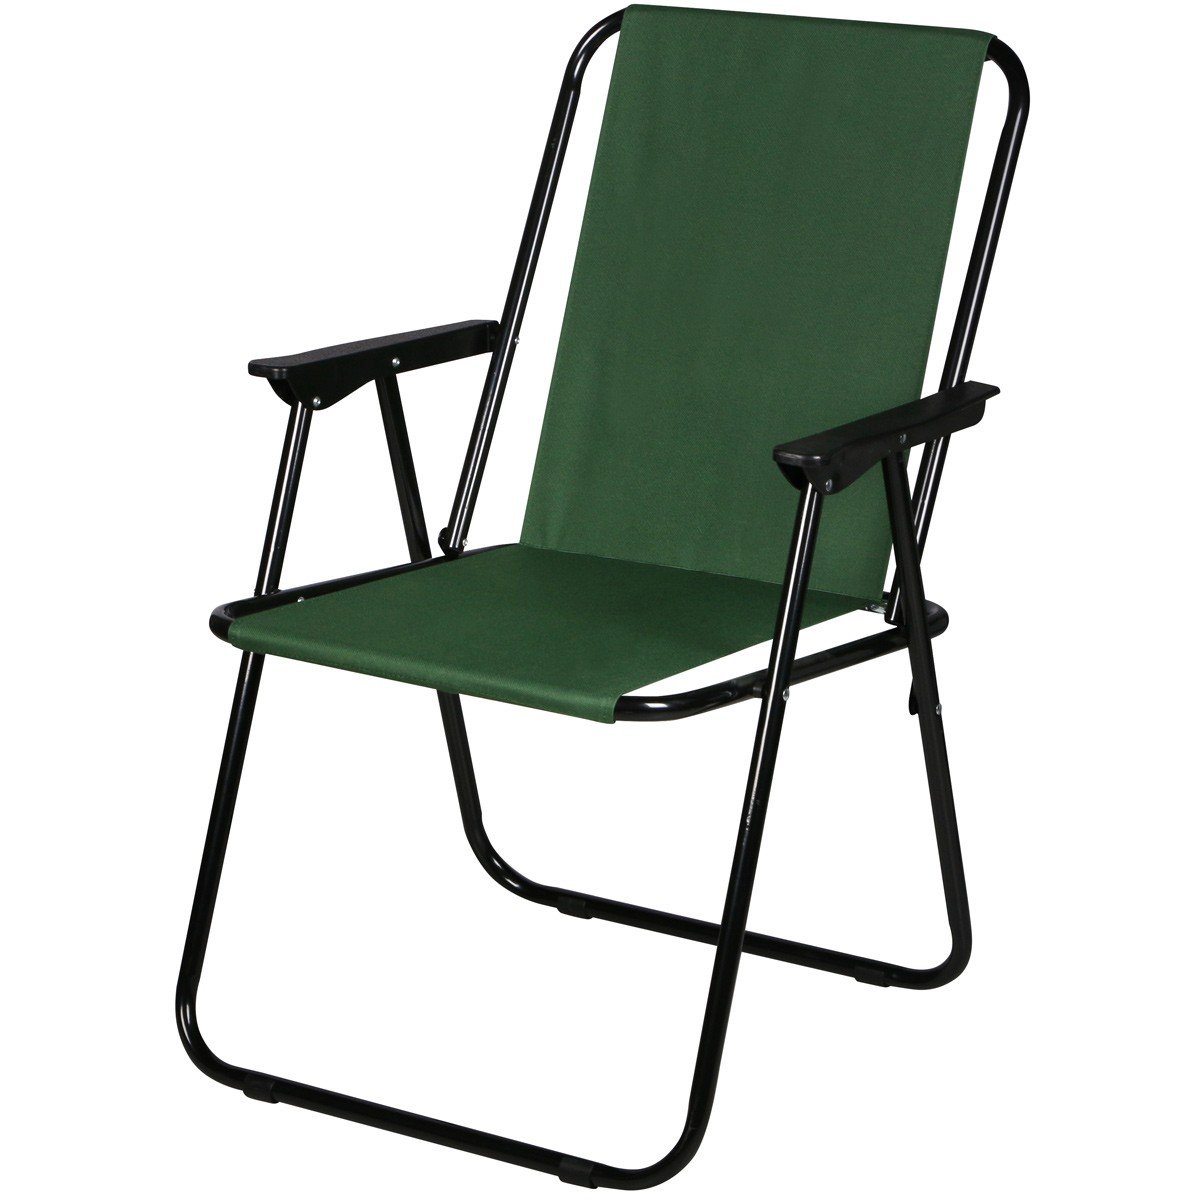 Royokamp Krzesło turystyczne z podłokietnikami 57x44x75cm składane zielone 1032580